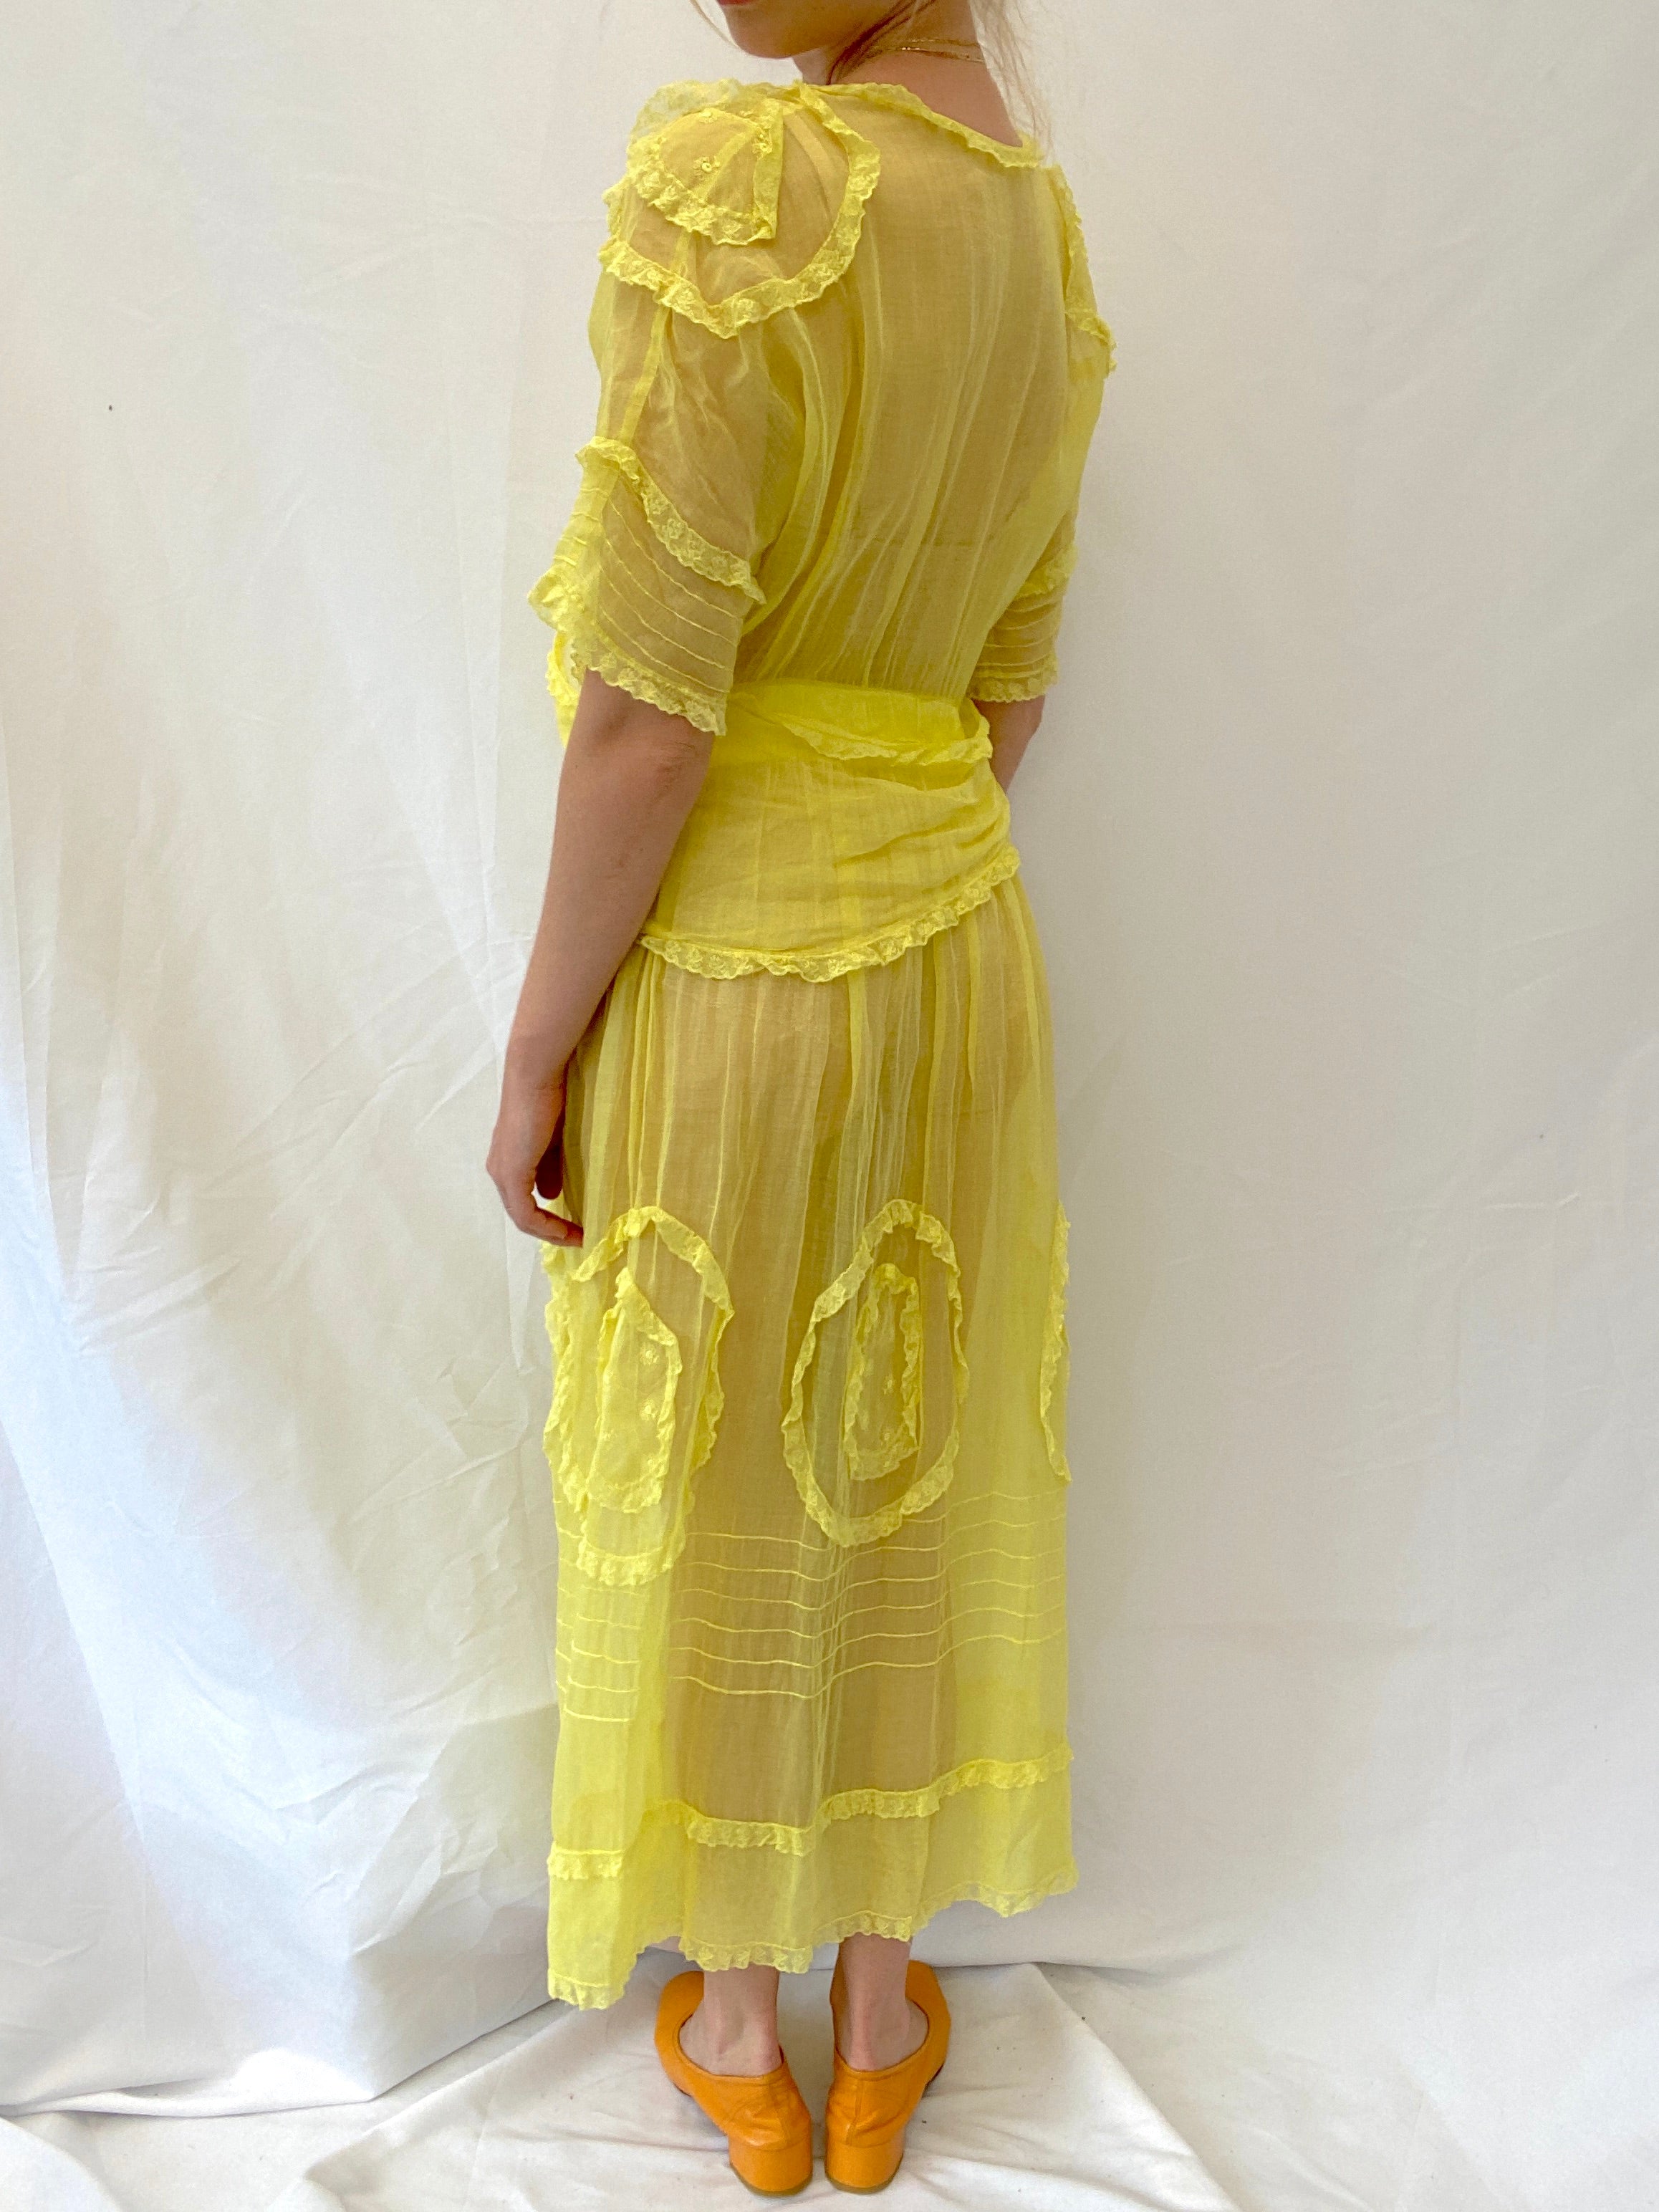 Hand Dyed Yellow Edwardian Organza Dress